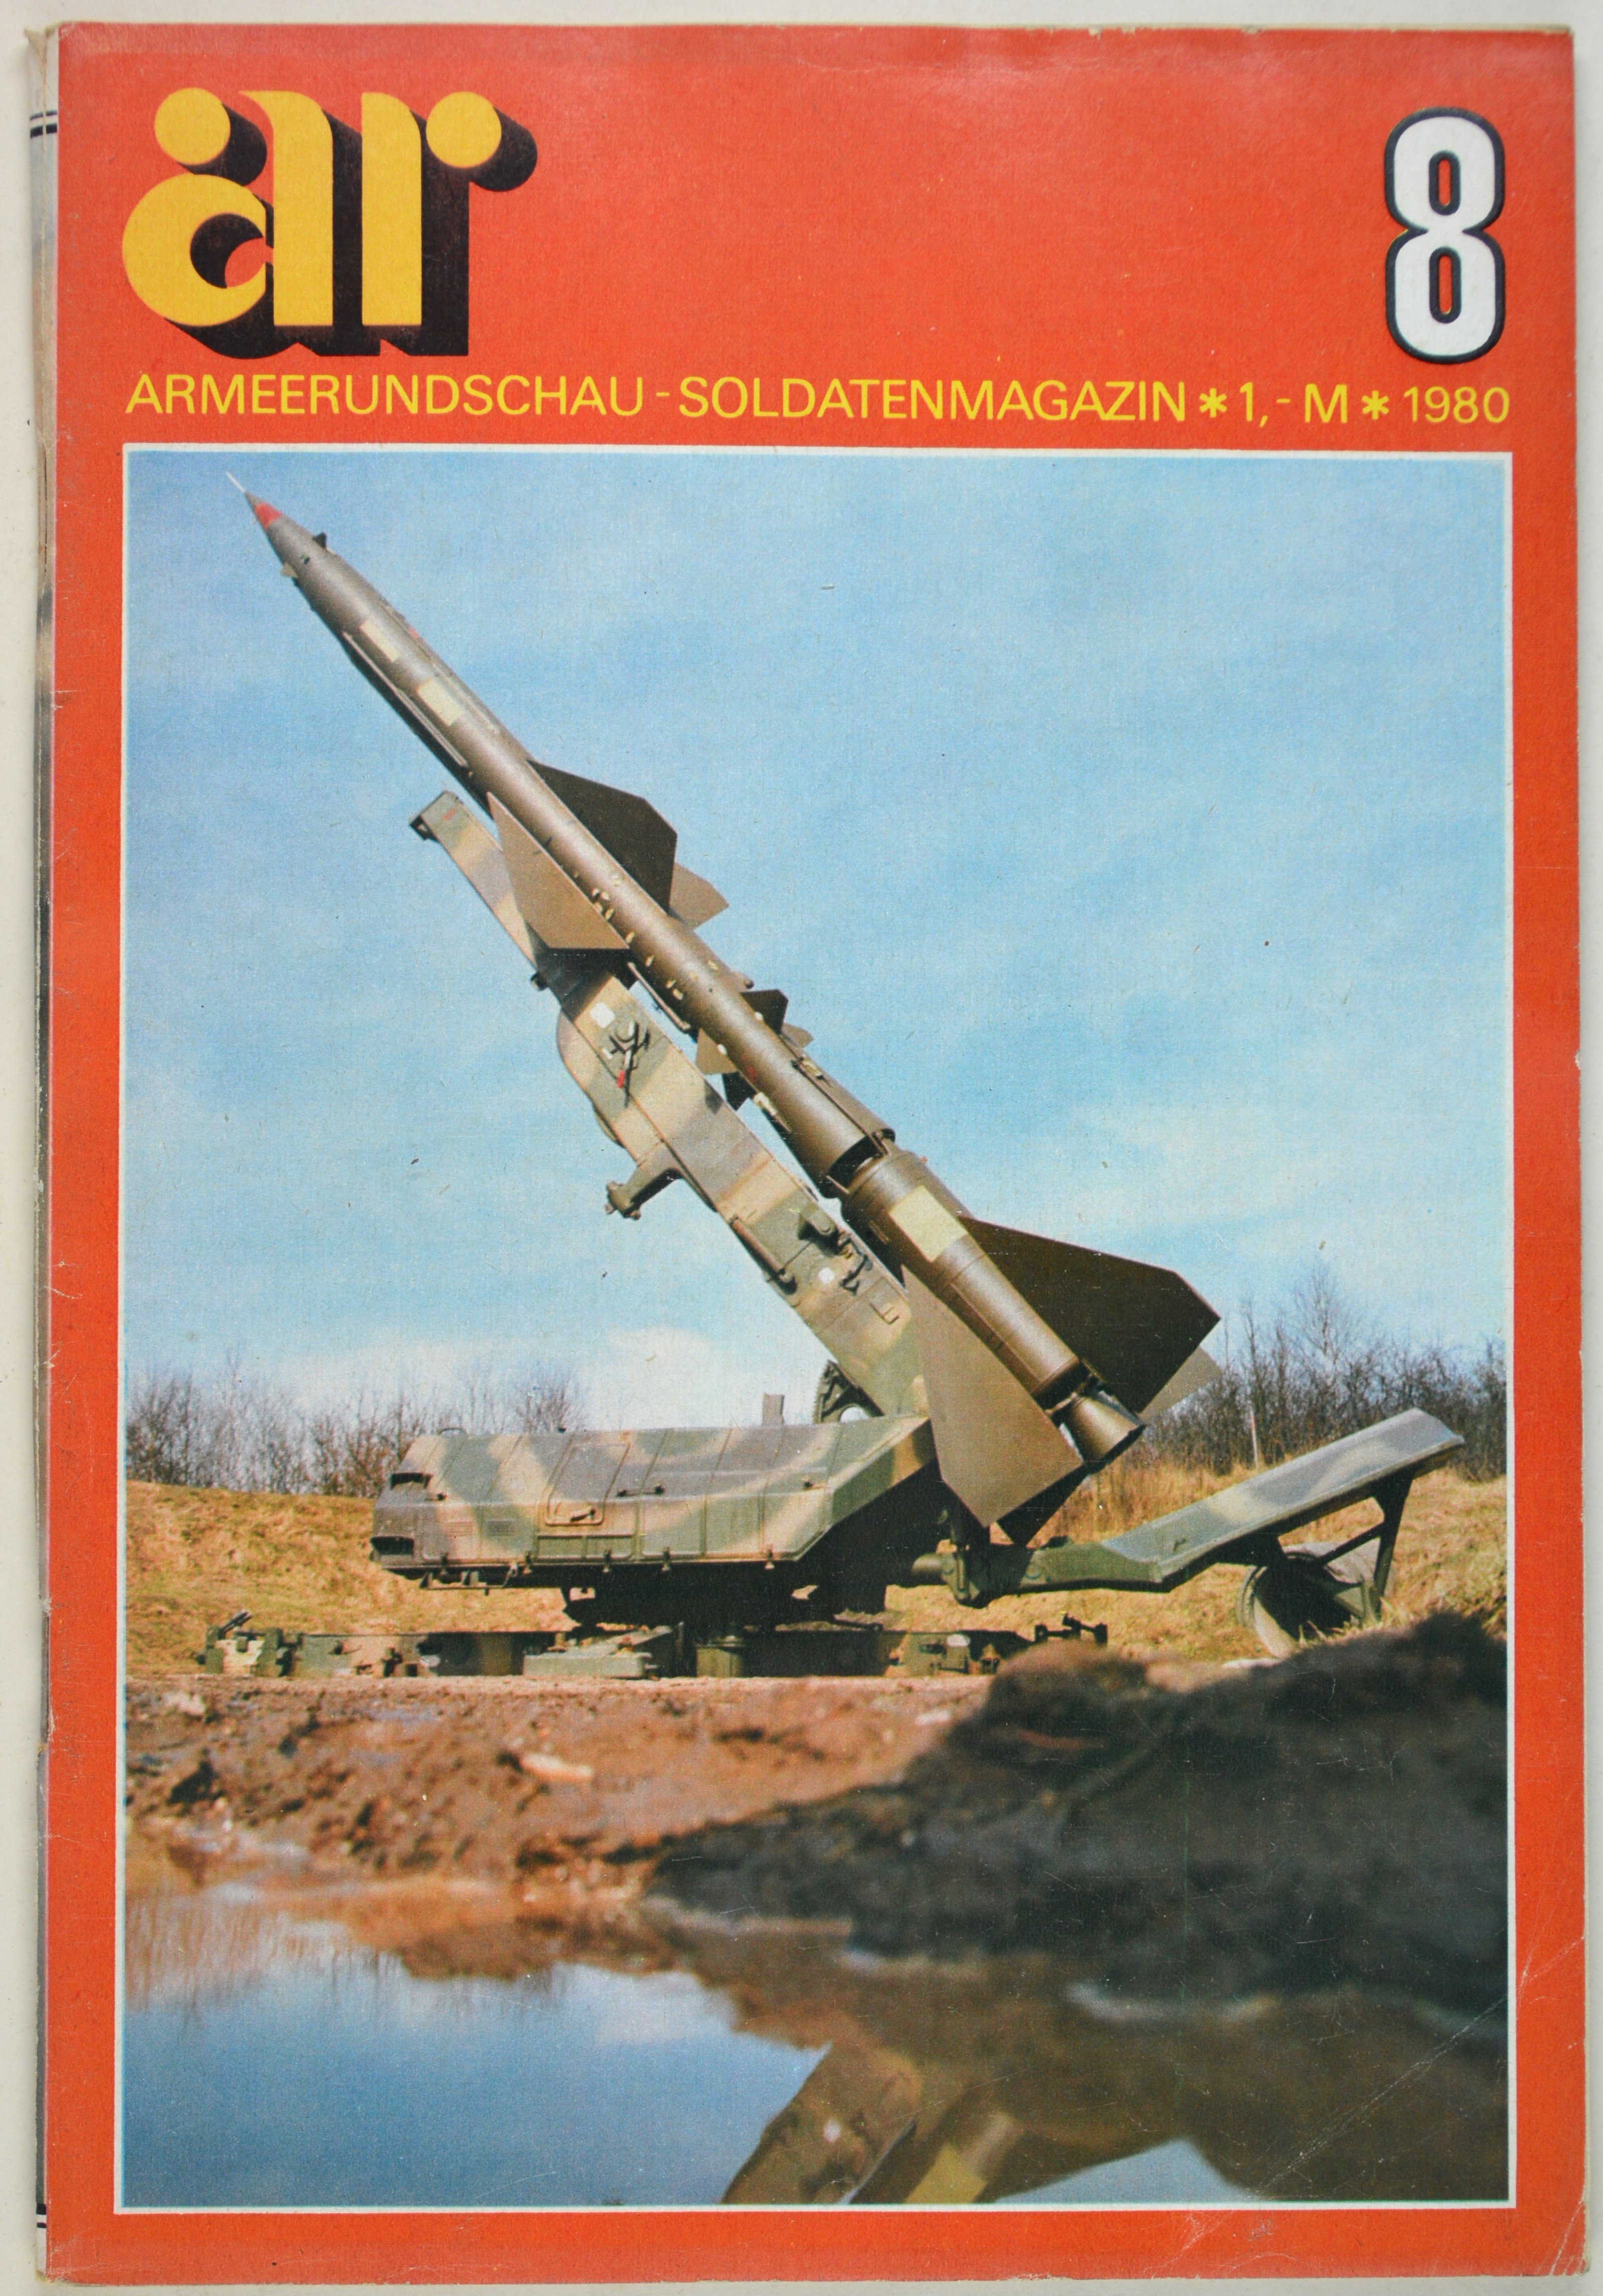 Armeerundschau - Soldatenmagazin (1980), Heft 8 (DDR Geschichtsmuseum im Dokumentationszentrum Perleberg CC BY-SA)